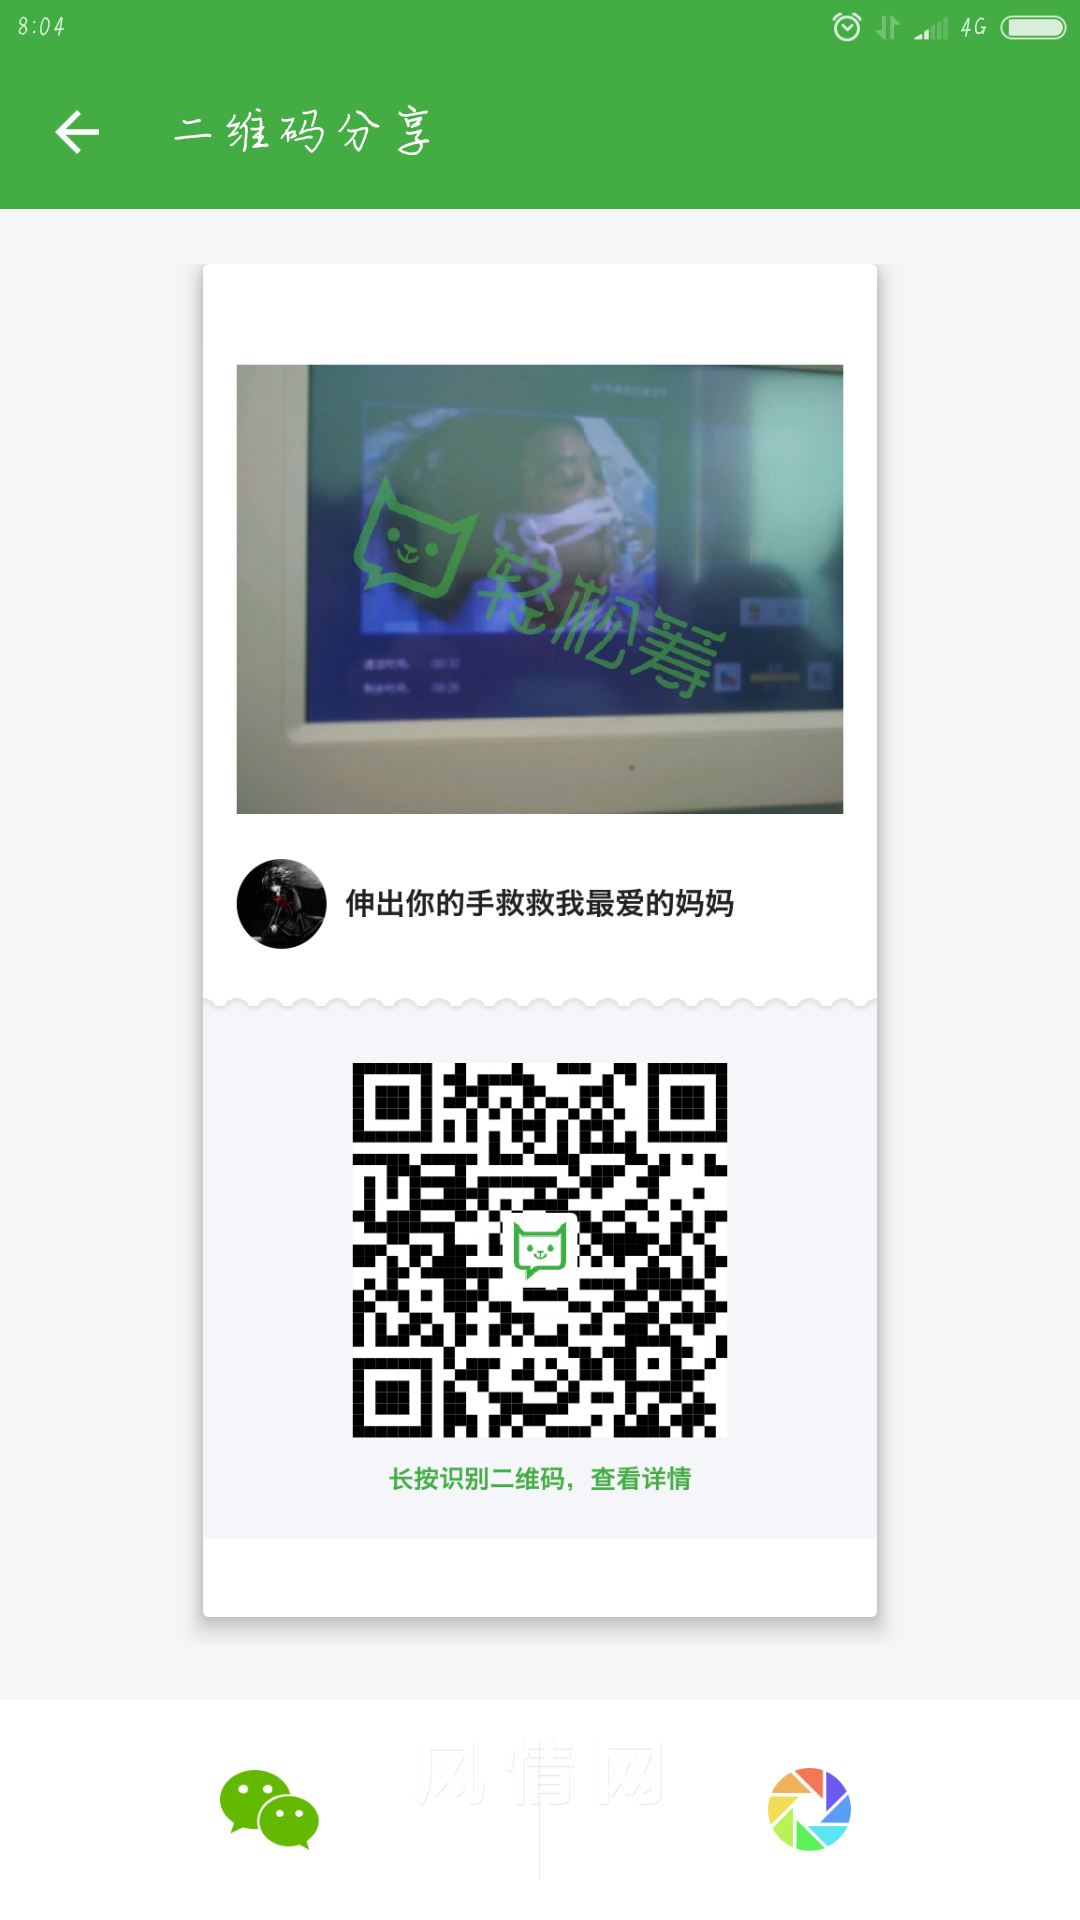 Screenshot_2016-06-19-08-04-43_com.qingsongchou.social.png